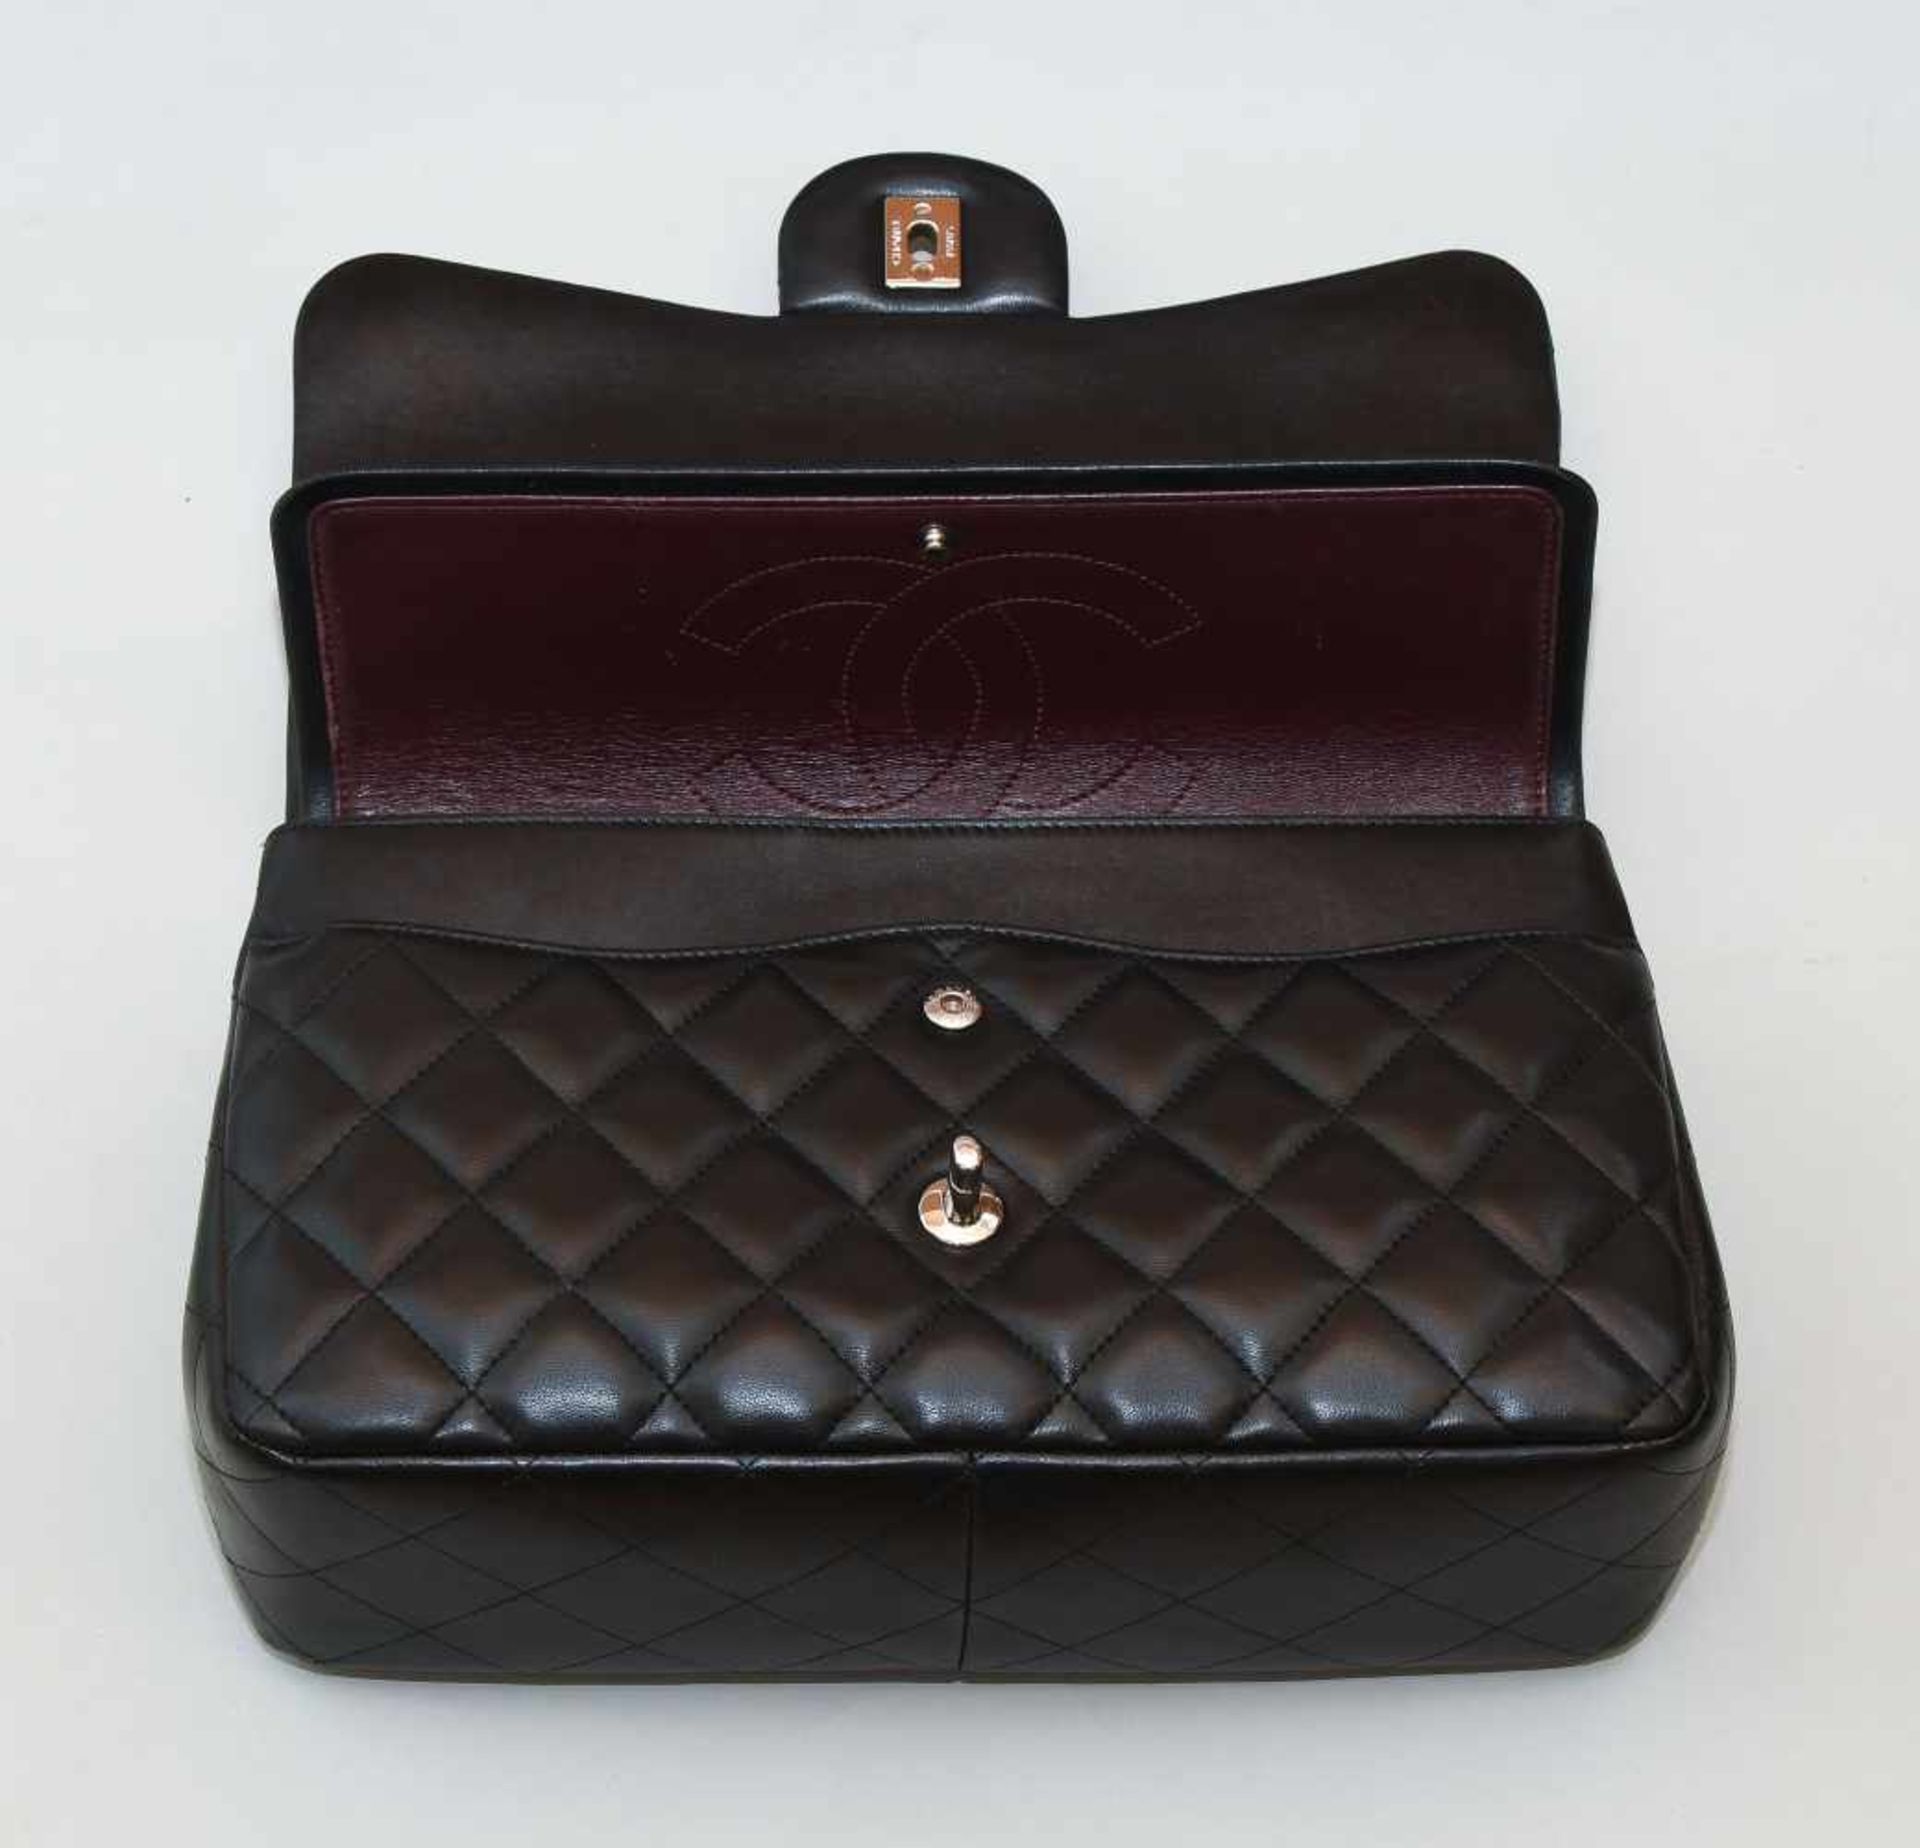 Chanel, Handtasche "Timeless" Jumbo Aus schwarzem Leder mit gestepptem Rautenmuster. - Bild 2 aus 13